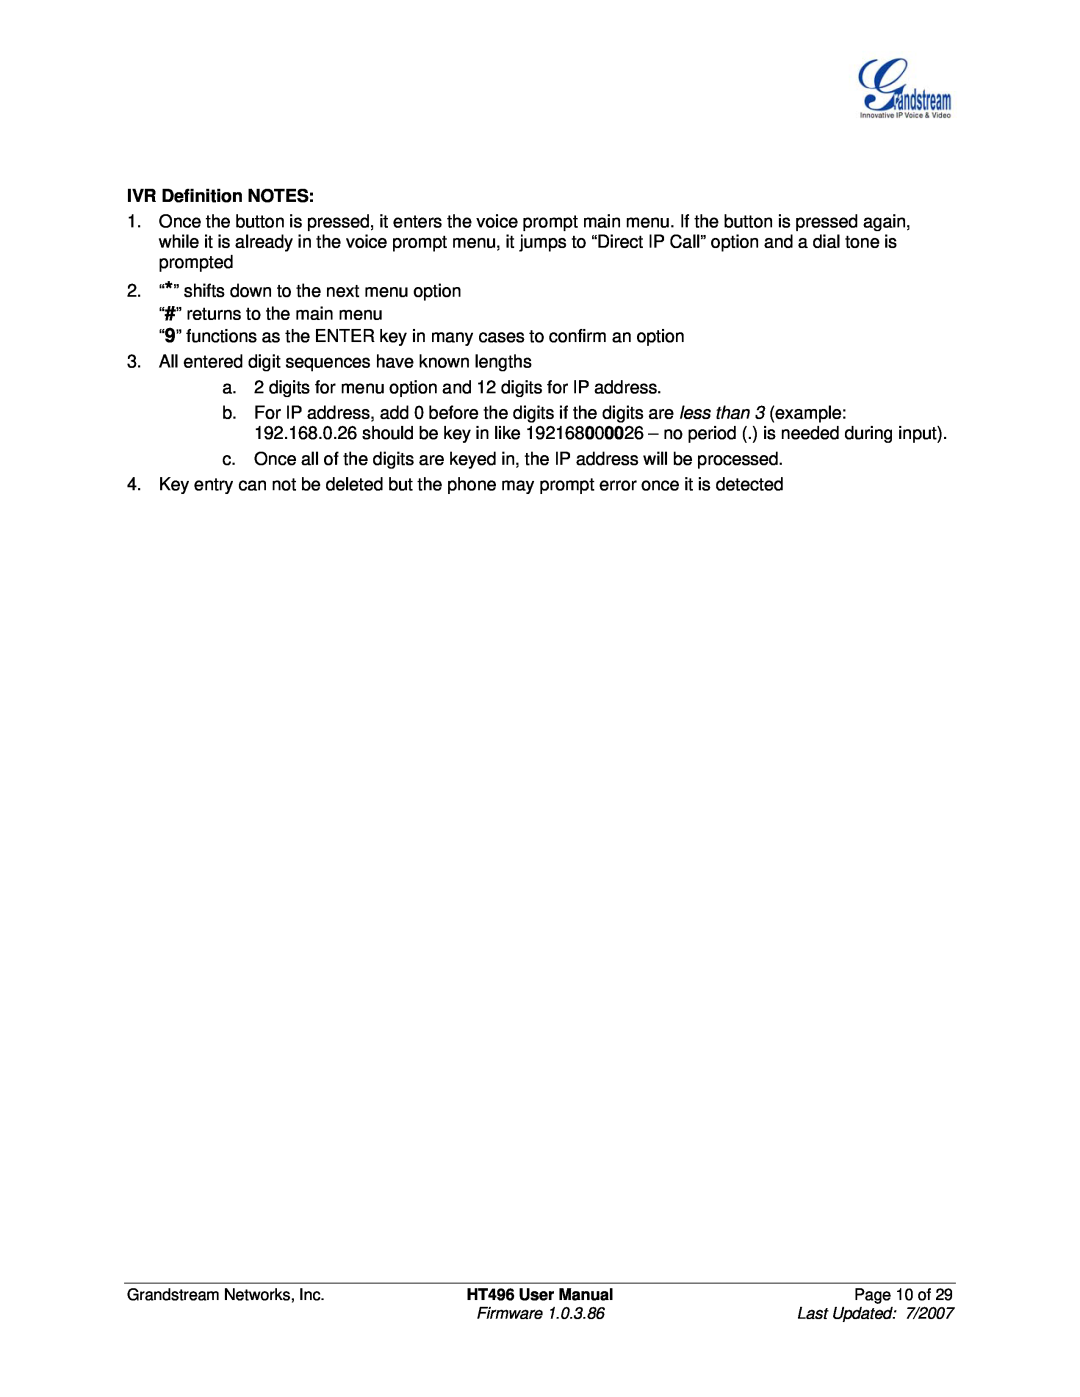 Grandstream Networks HT496 user manual IVR Definition NOTES 